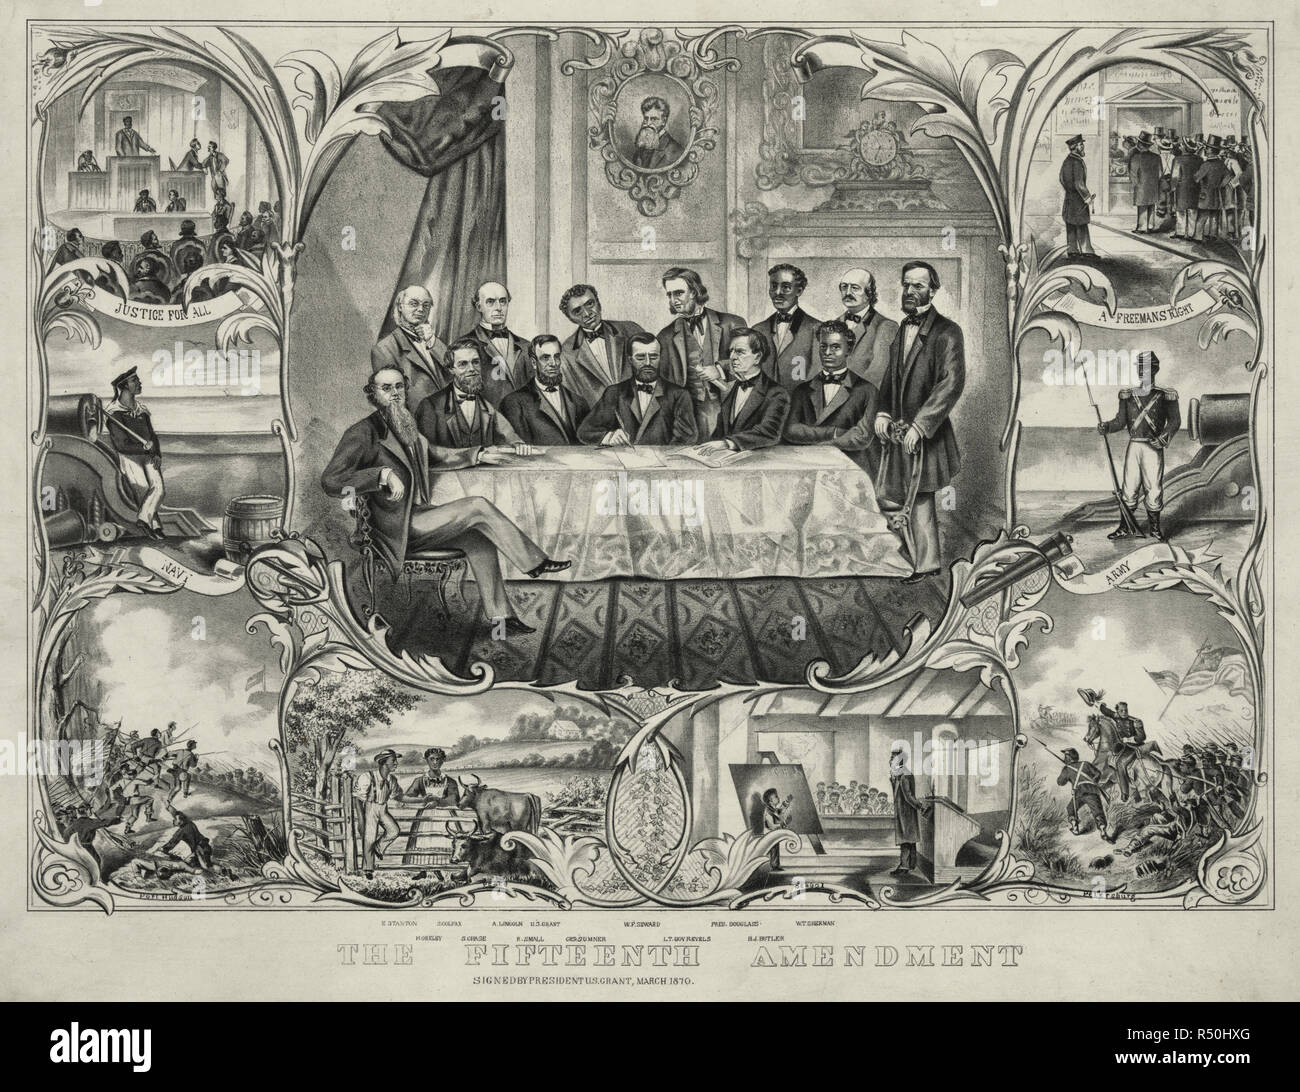 La decimoquinta enmienda - Imprimir mostrando presidente Grant sentado en el centro de una gran mesa, con varios hombres agrupados alrededor, firma la 15ª enmienda que concede el derecho a votar no puede ser denegada por motivos de raza o color. Desde la izquierda, sentado y de pie, son "E. Stanton, H. Greley [es decir, Greeley], S. Colfax, A. Lincoln, R. Pequeña[s], el U.S. Grant, CHS. Sumner, W.F. Seward, el Vicegobernador. Revels, Fred. Douglass, B.J. [Es decir, F.] Butler, [y] W.T. Sherman.' viñetas en los laterales y en la parte inferior muestran los afroamericanos en el servicio militar, en la escuela, en la comunidad, y la votación. Una cabeza y hombros p Foto de stock